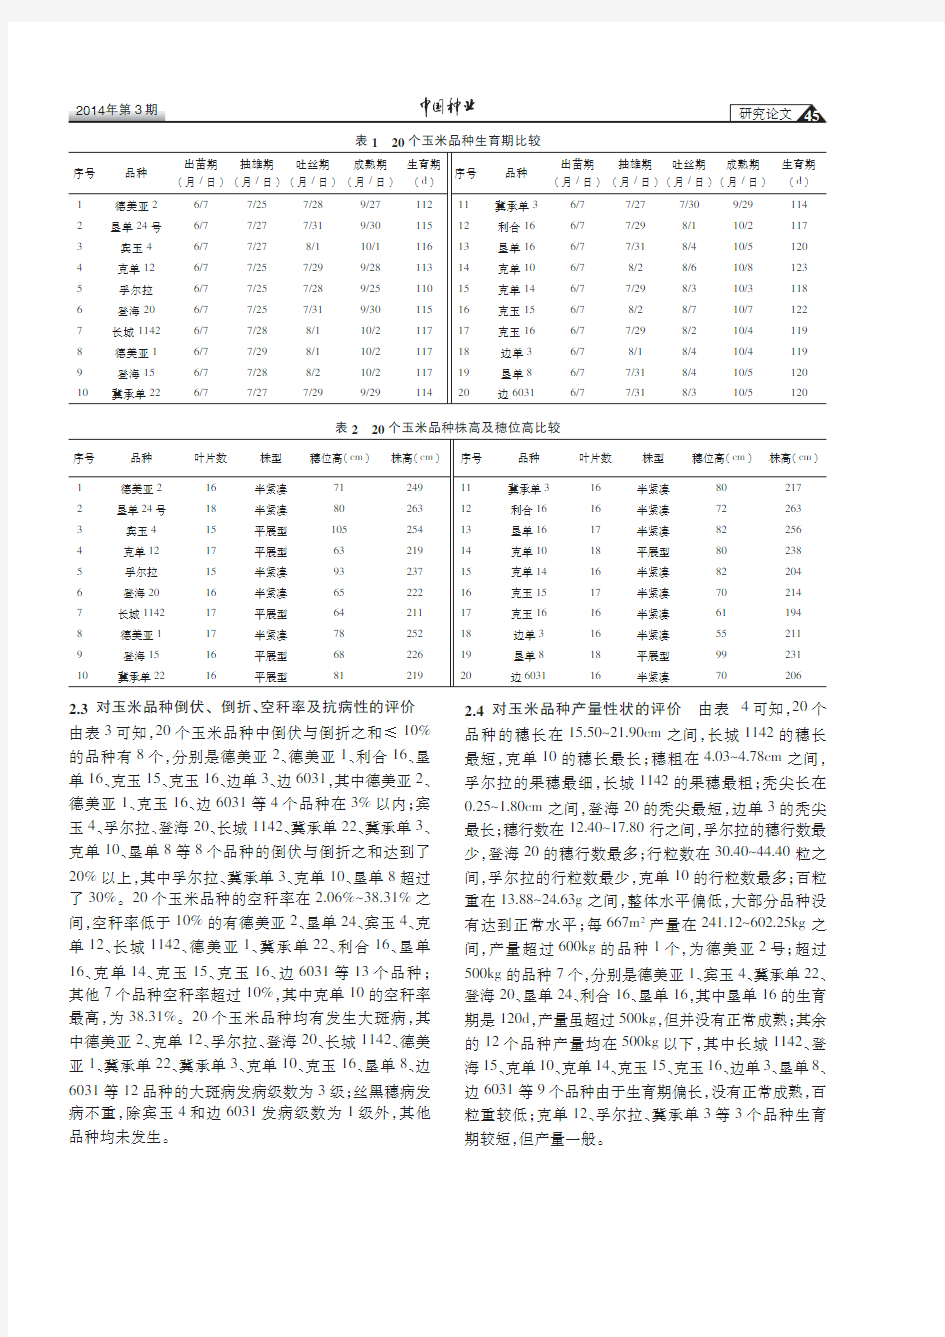 黑龙江省北部玉米品种的综合性状评价